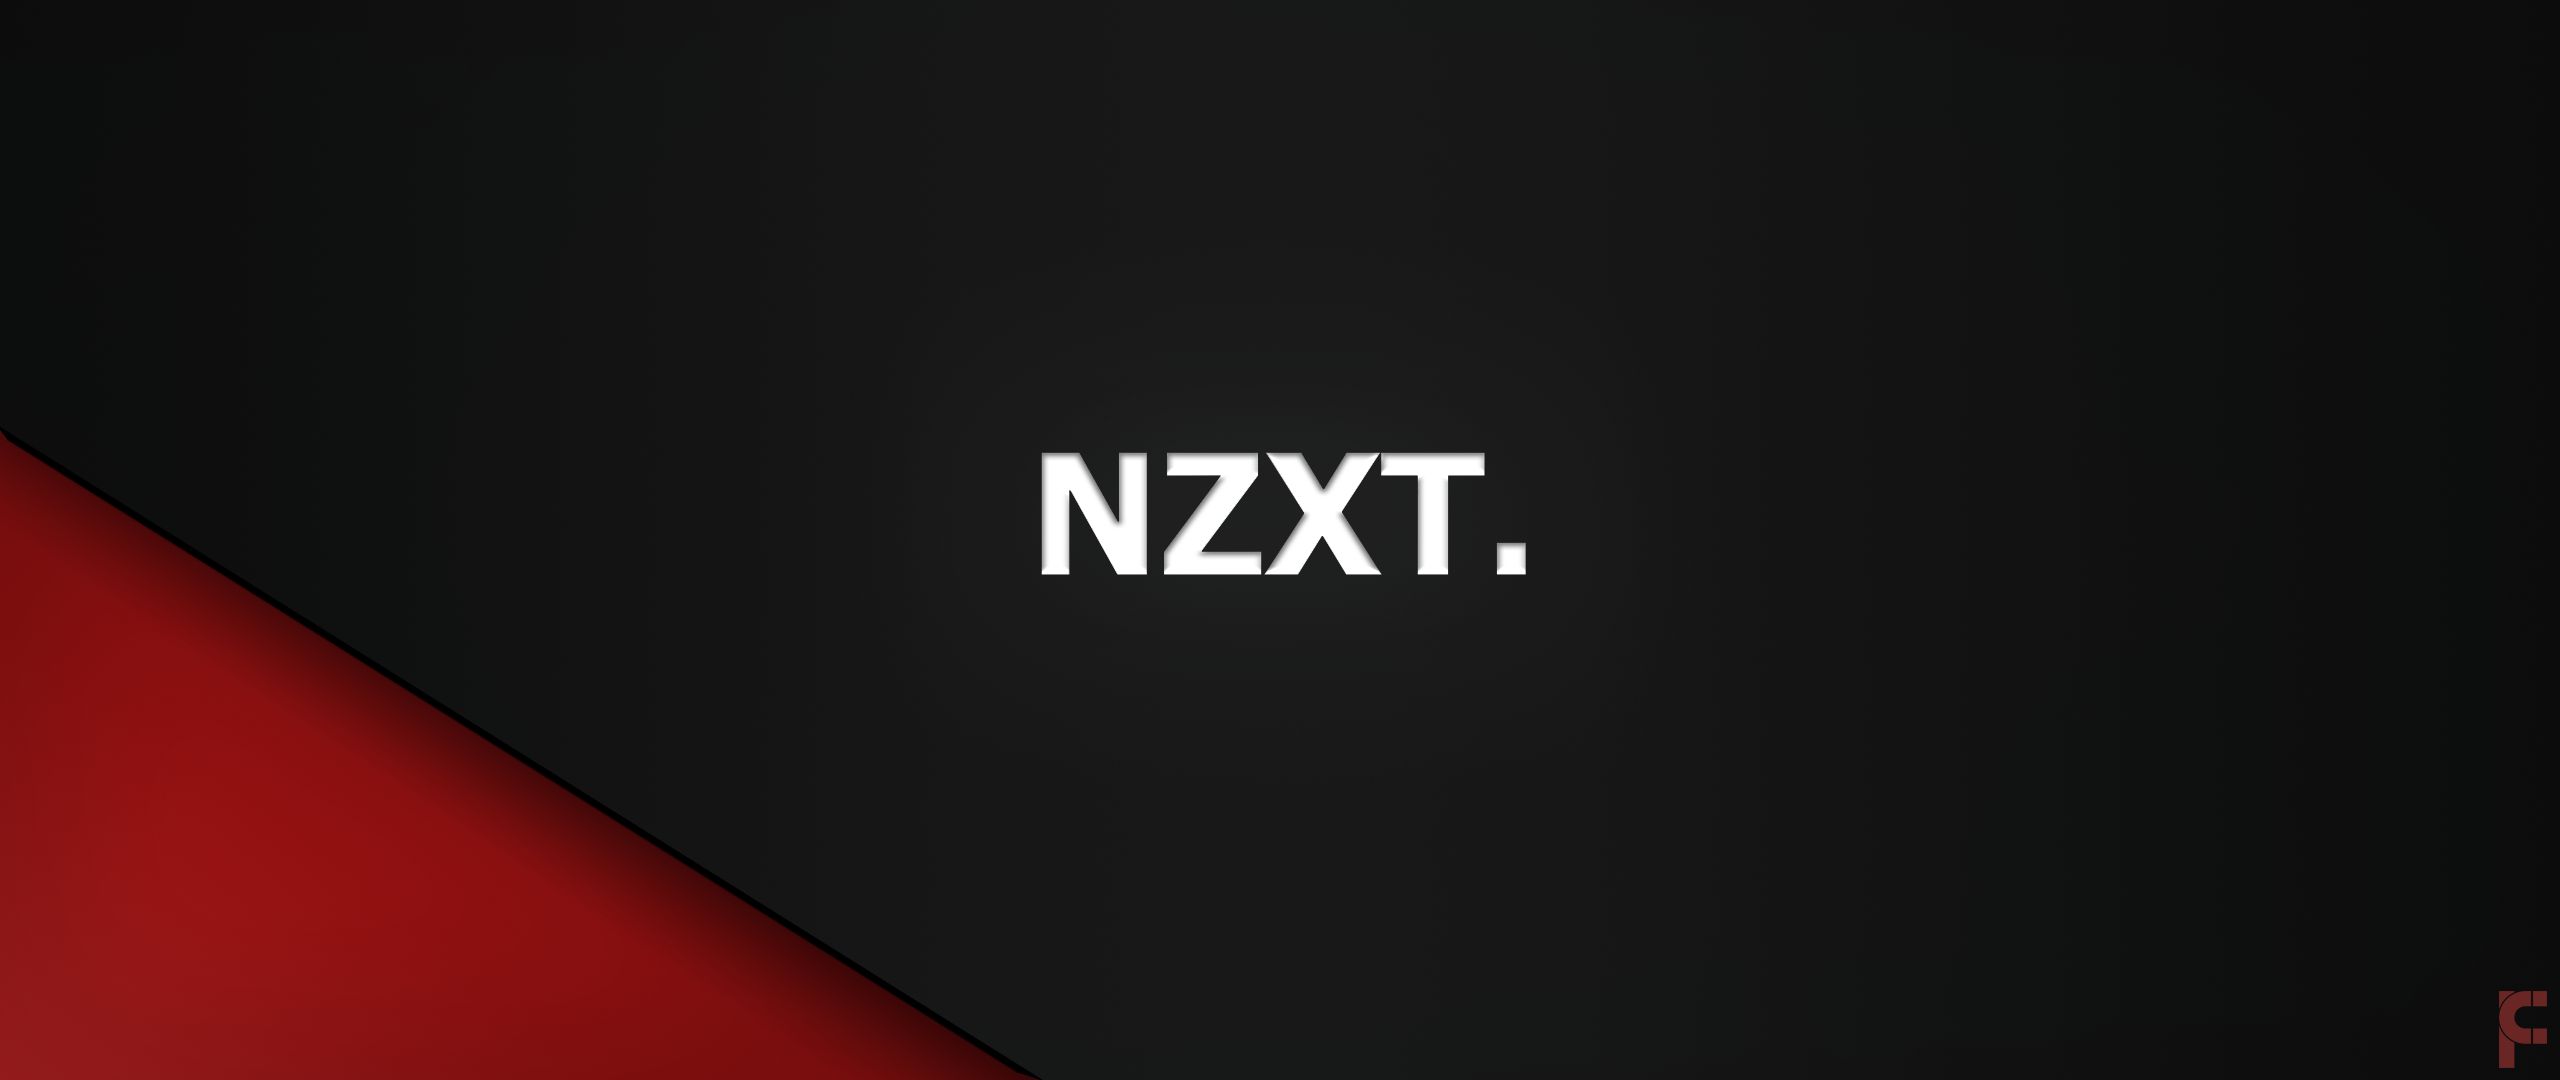 nzxt, technology